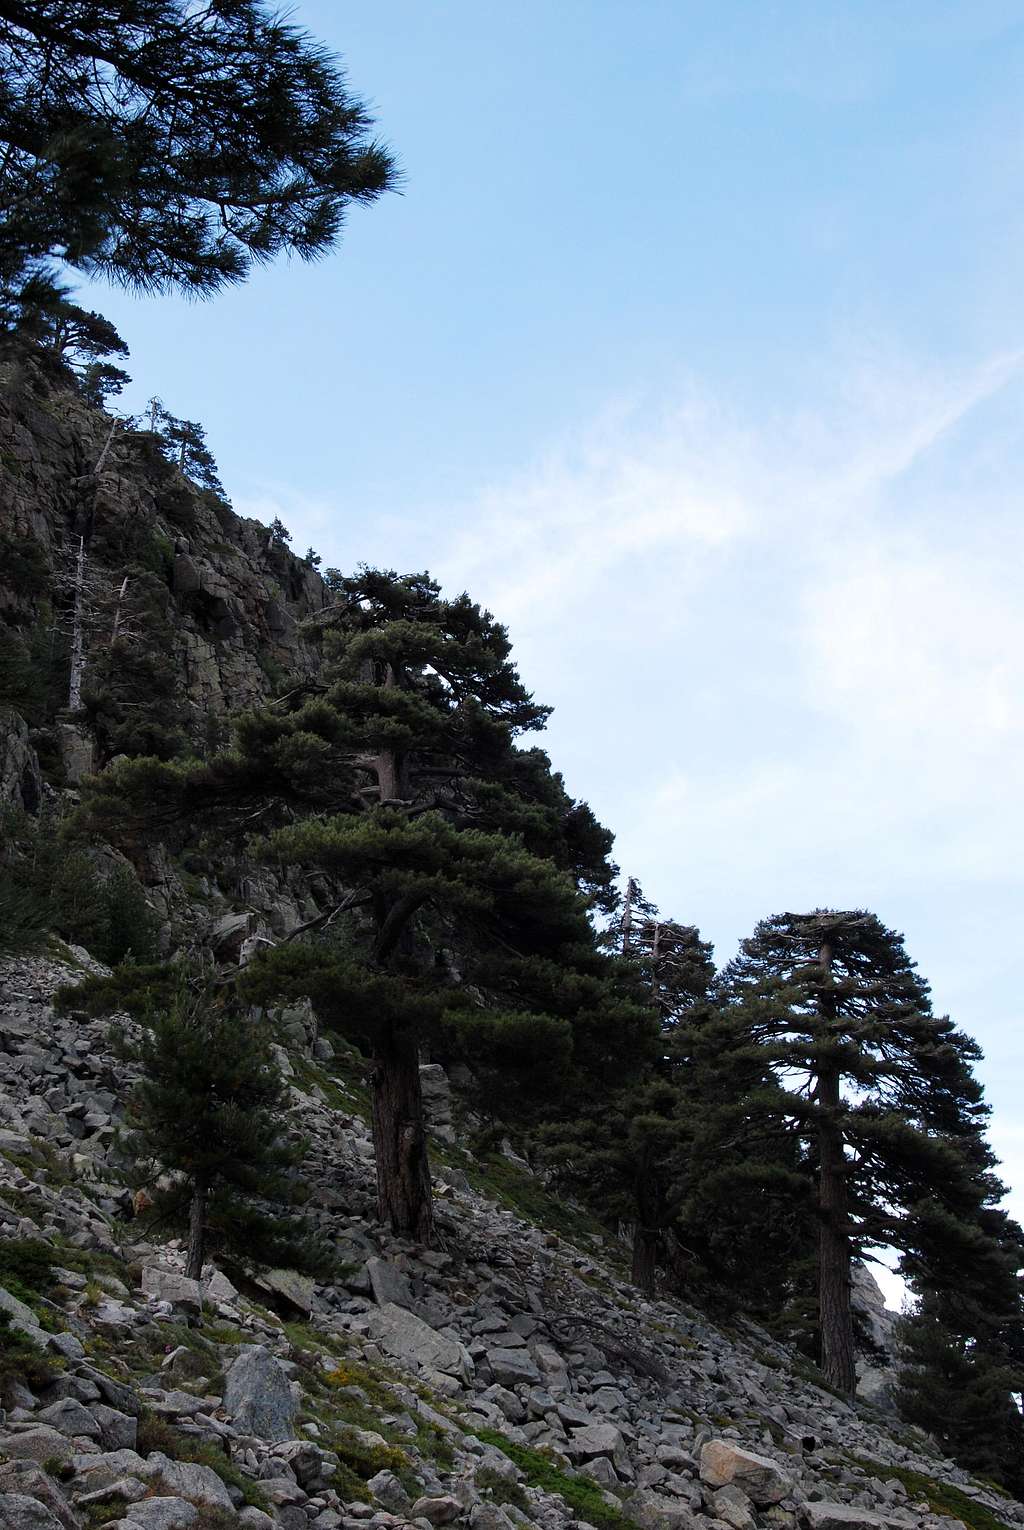 Lariccio pine trees